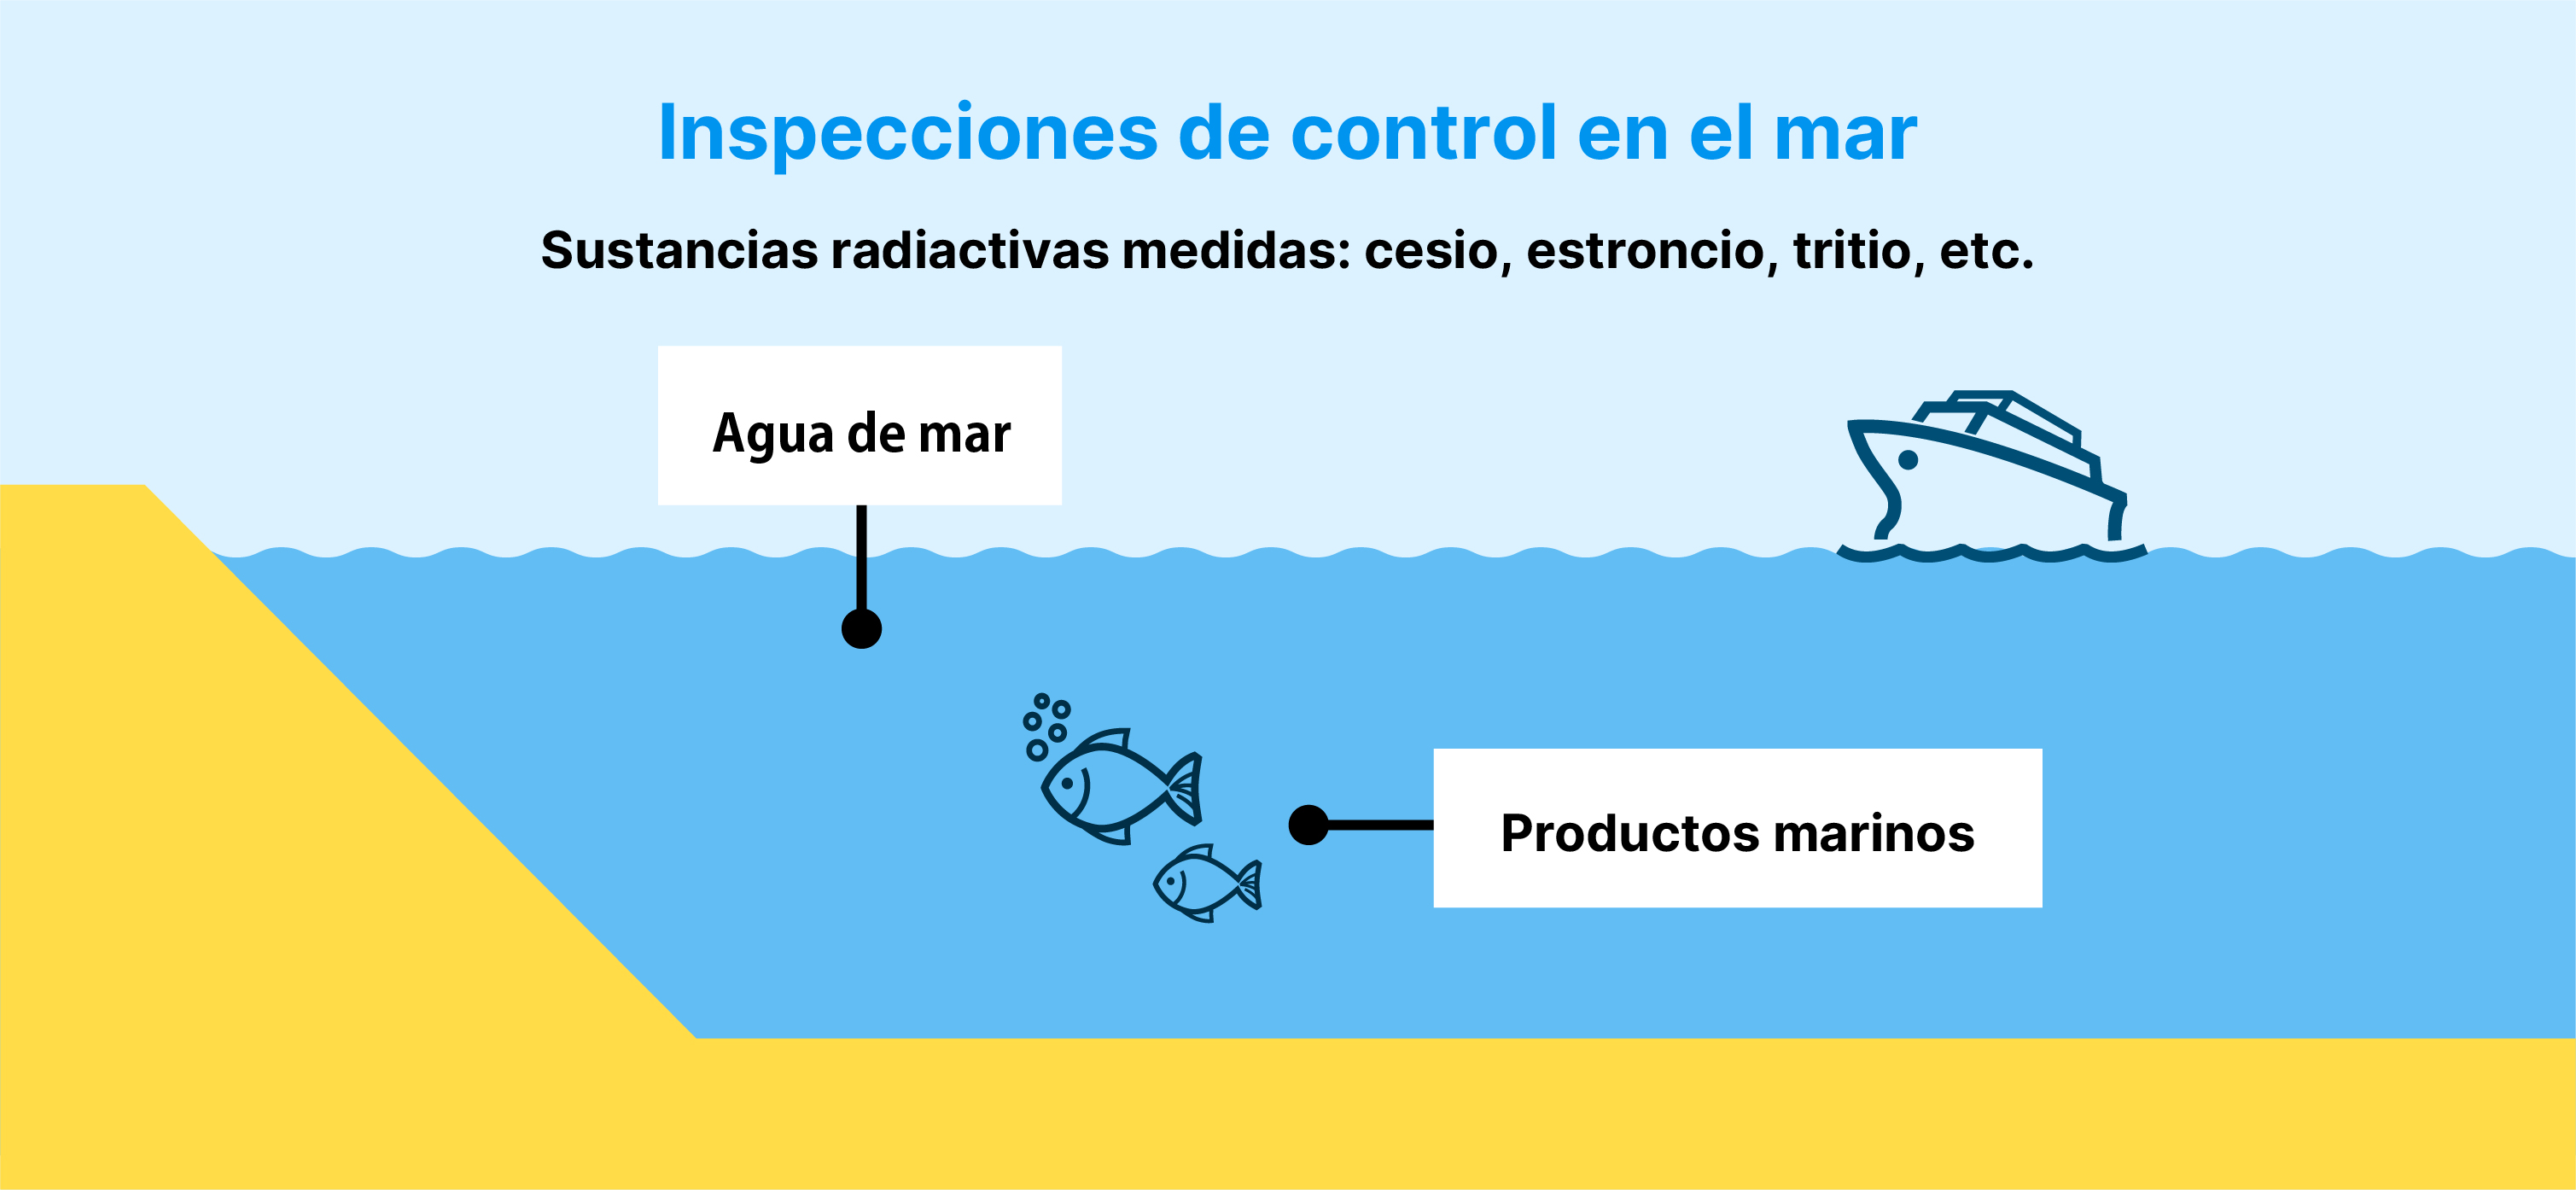 Inspecciones de control en el mar Sustancias radiactivas medidas: cesio, estroncio, tritio, etc. Agua de mar Productos marinos